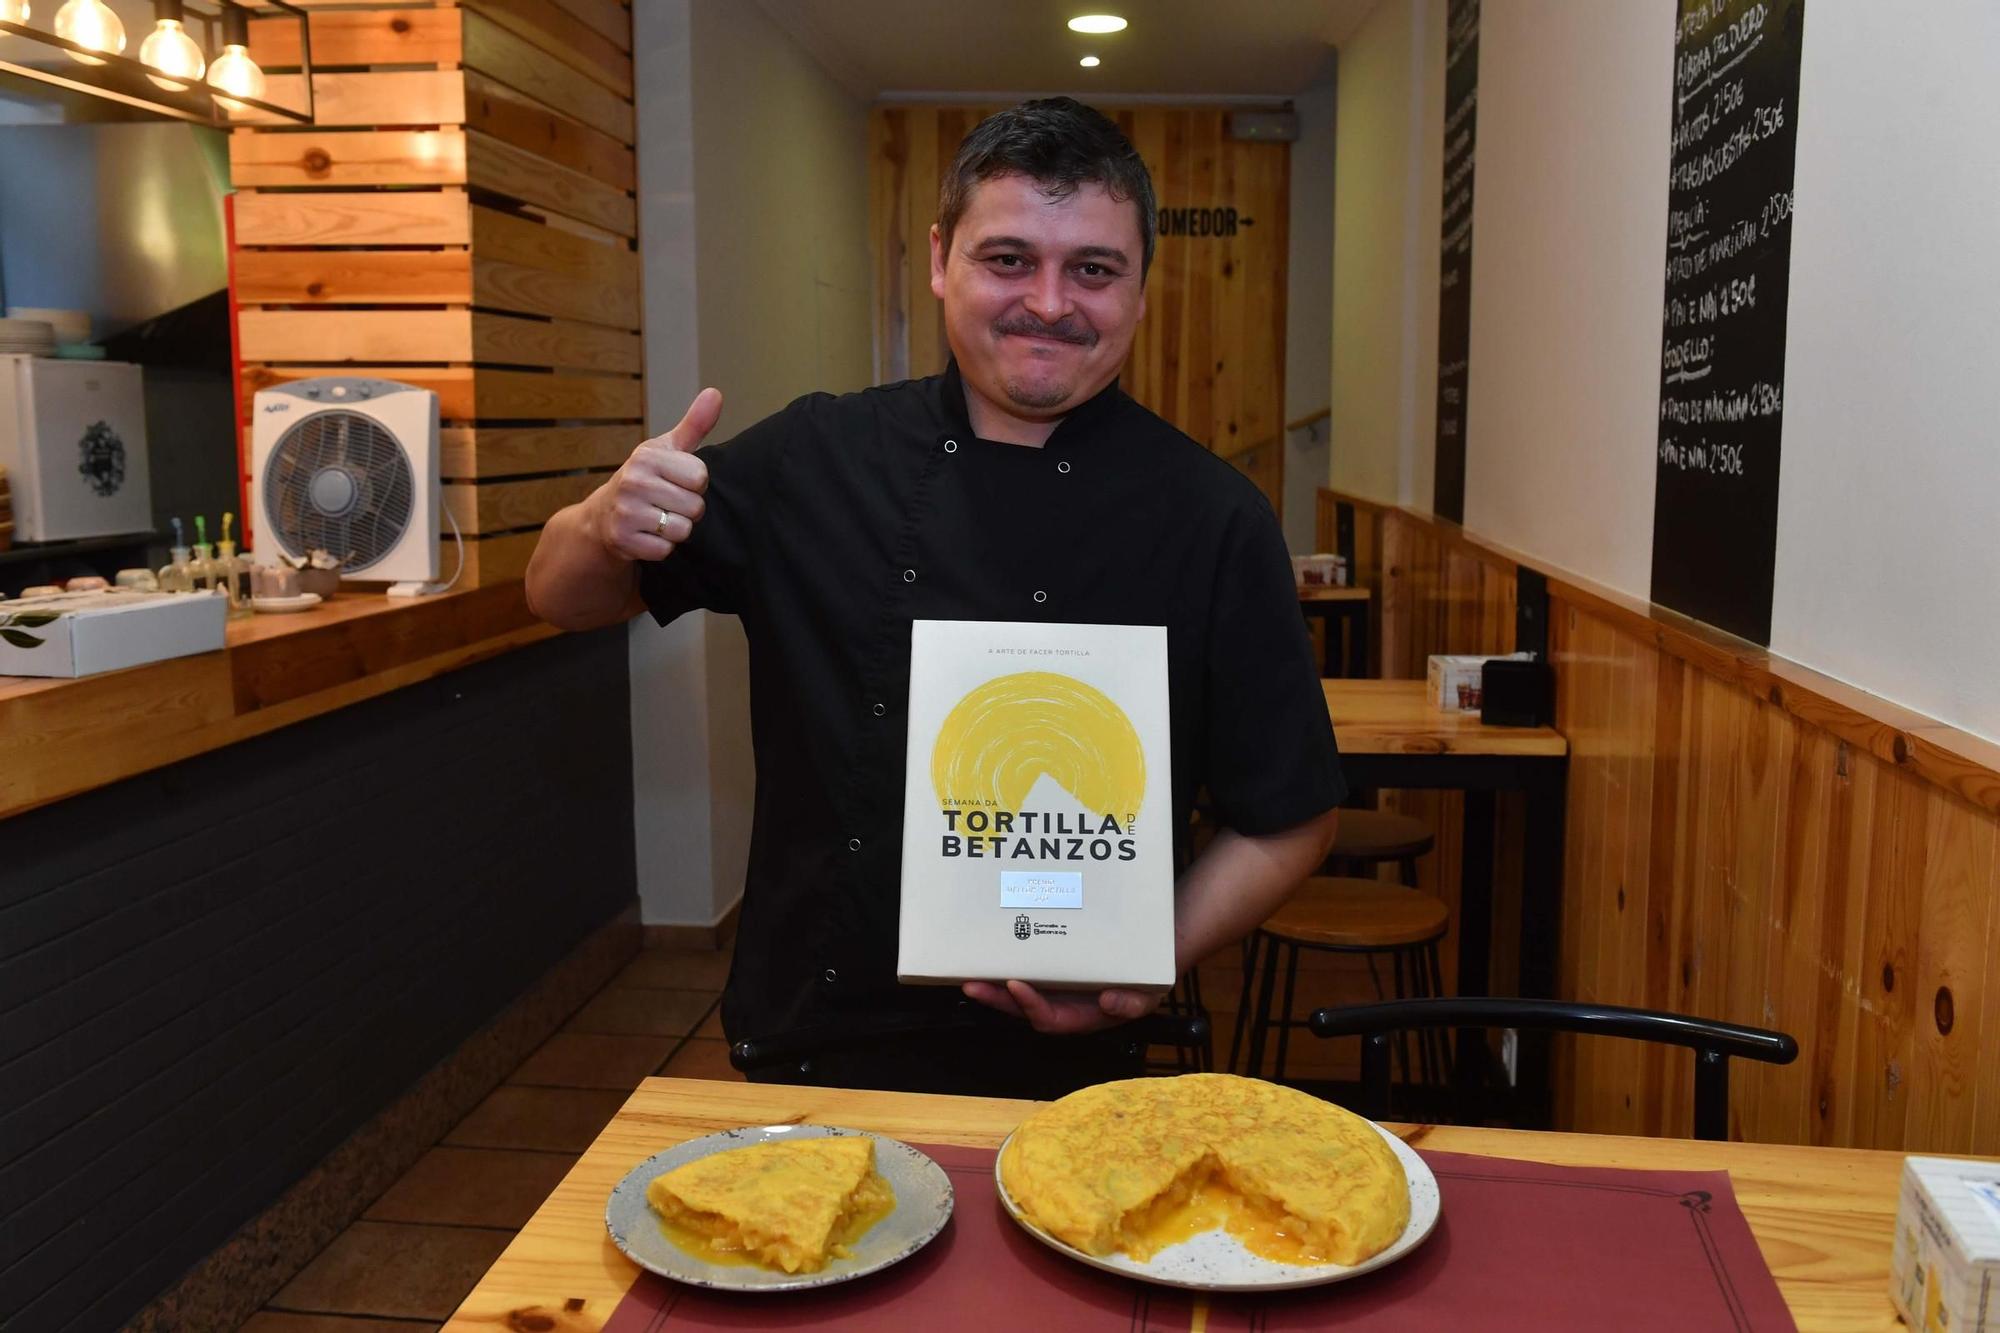 O Noso Recuncho gana el premio a la Mejor Tortilla de Betanzos